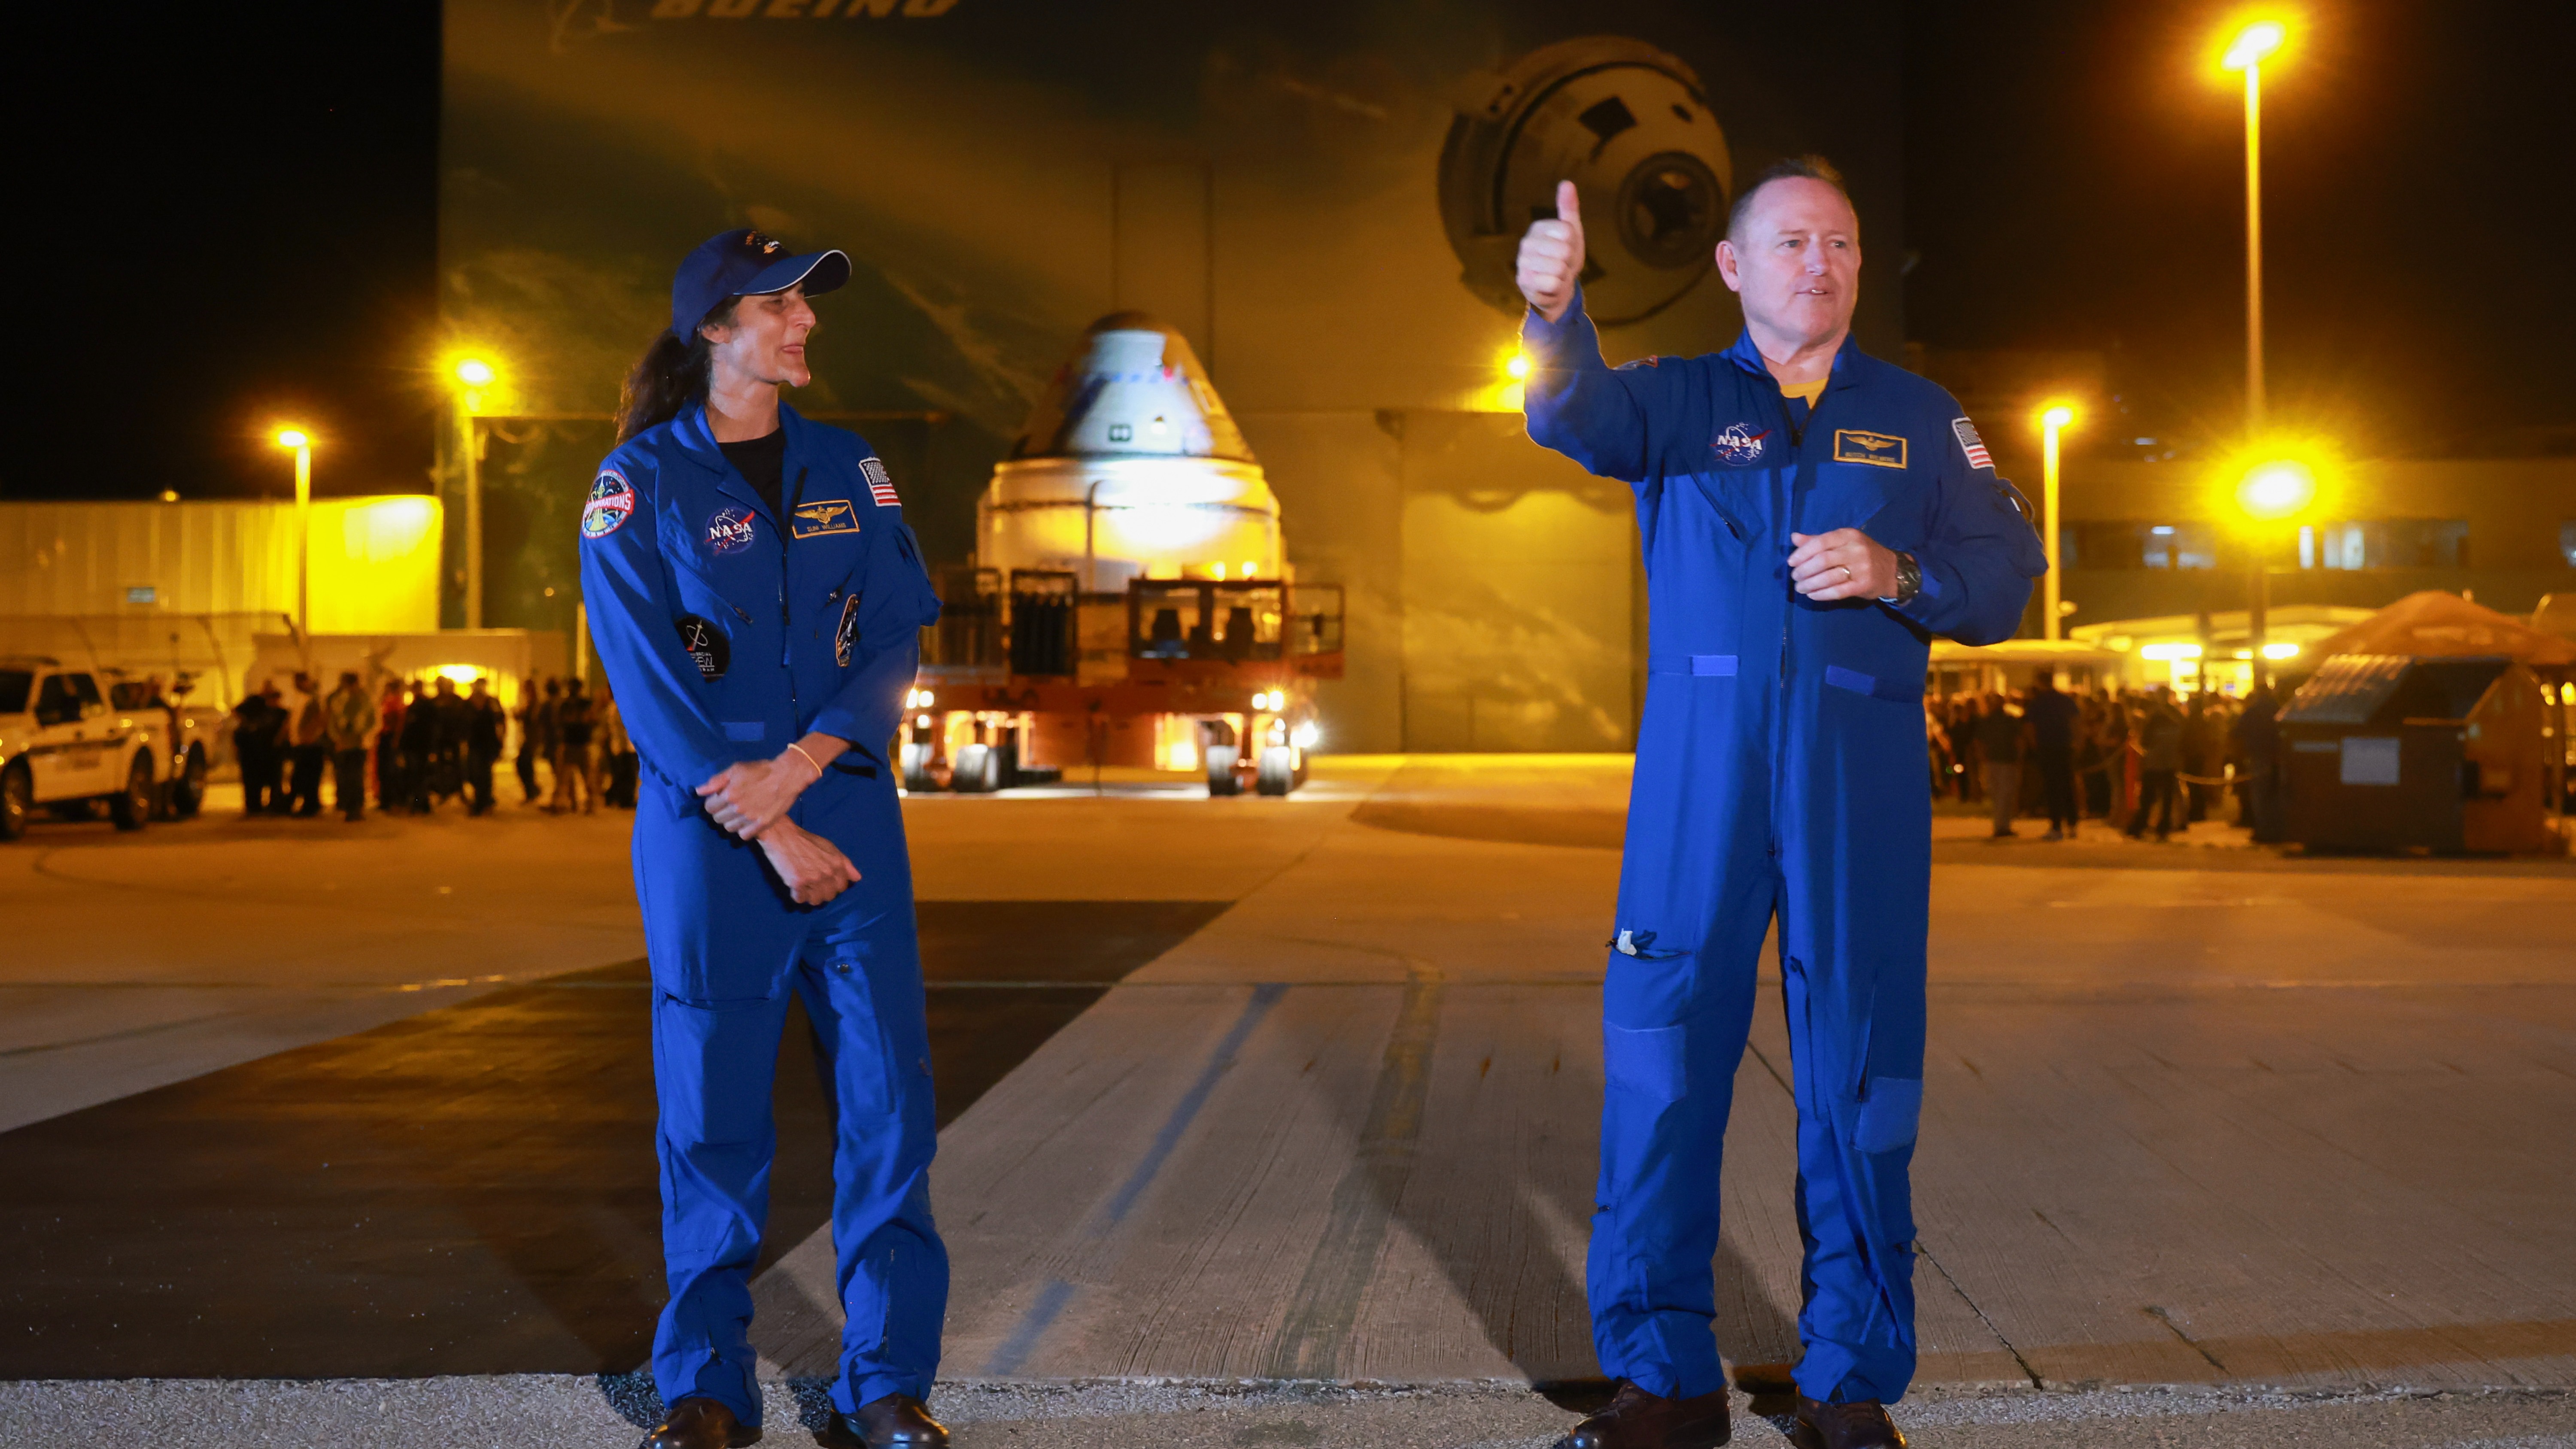 Dwóch astronautów w kombinezonach lotniczych w ciemności.  Osoba po prawej stronie pokazuje kciuk w górę.  Daleko w tle widać statek kosmiczny w kształcie stożka na przyczepie przed budynkami